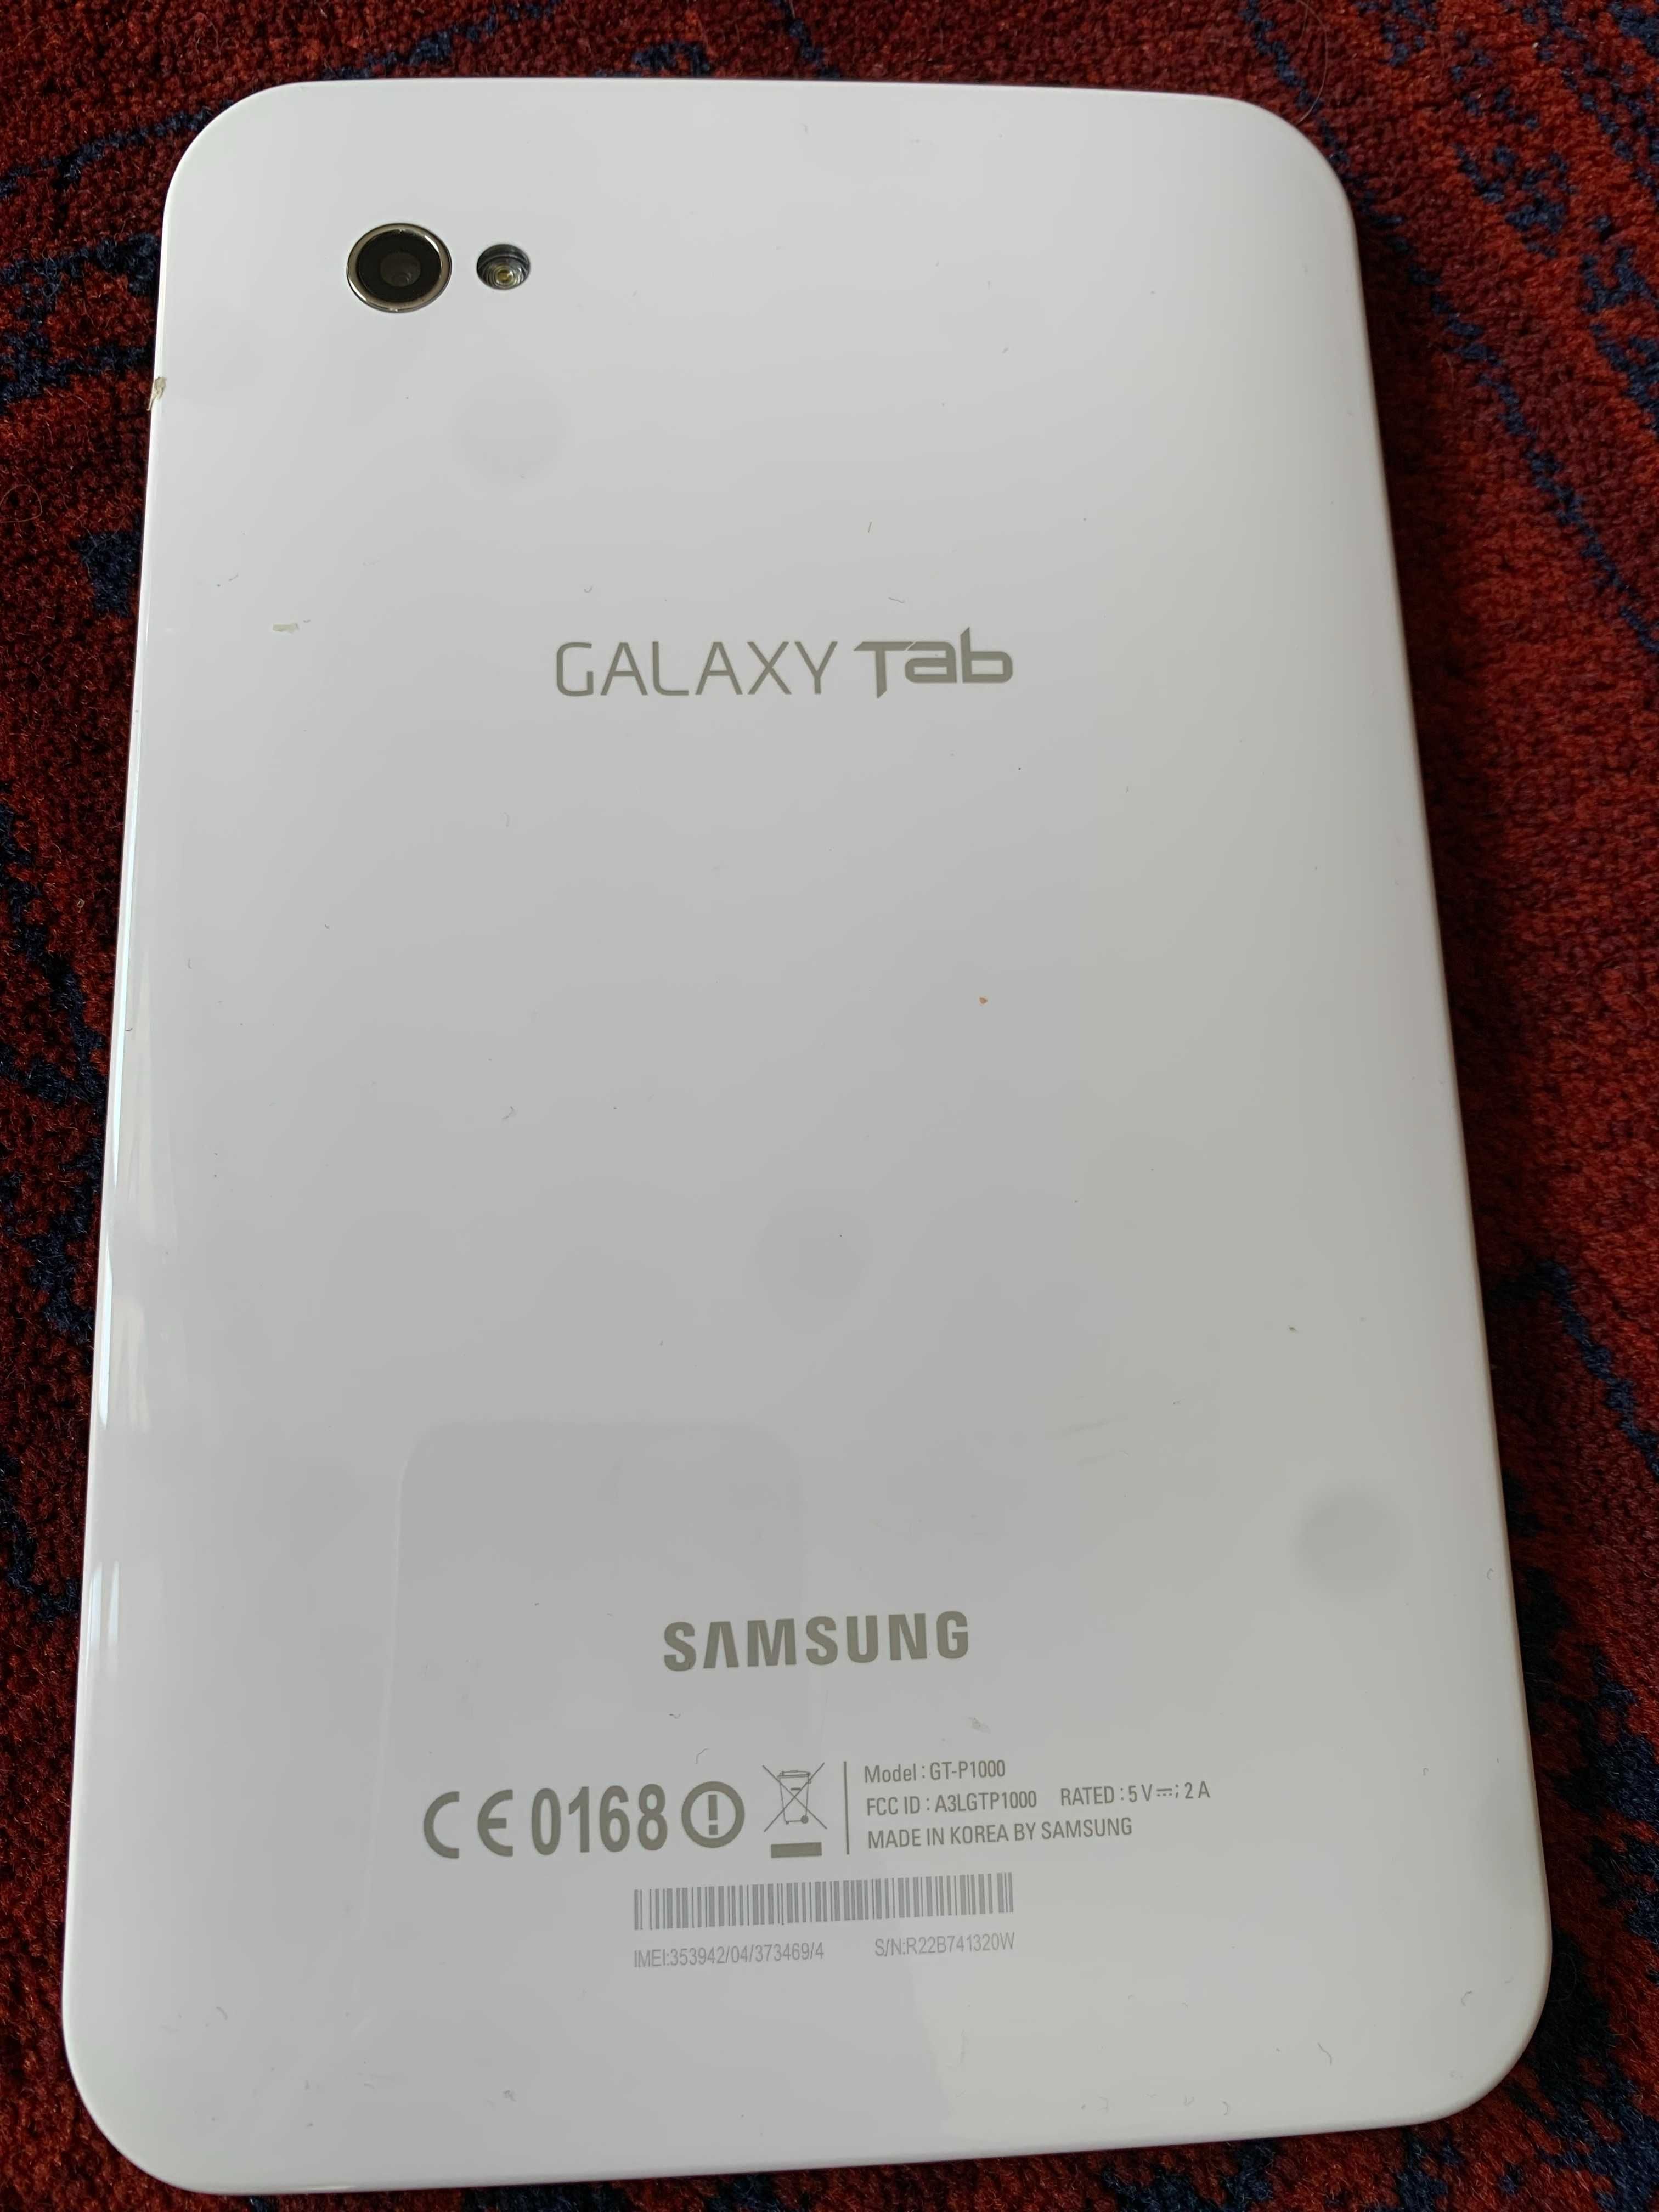 Samsung Galaxy Tab GT-P1000 16GB